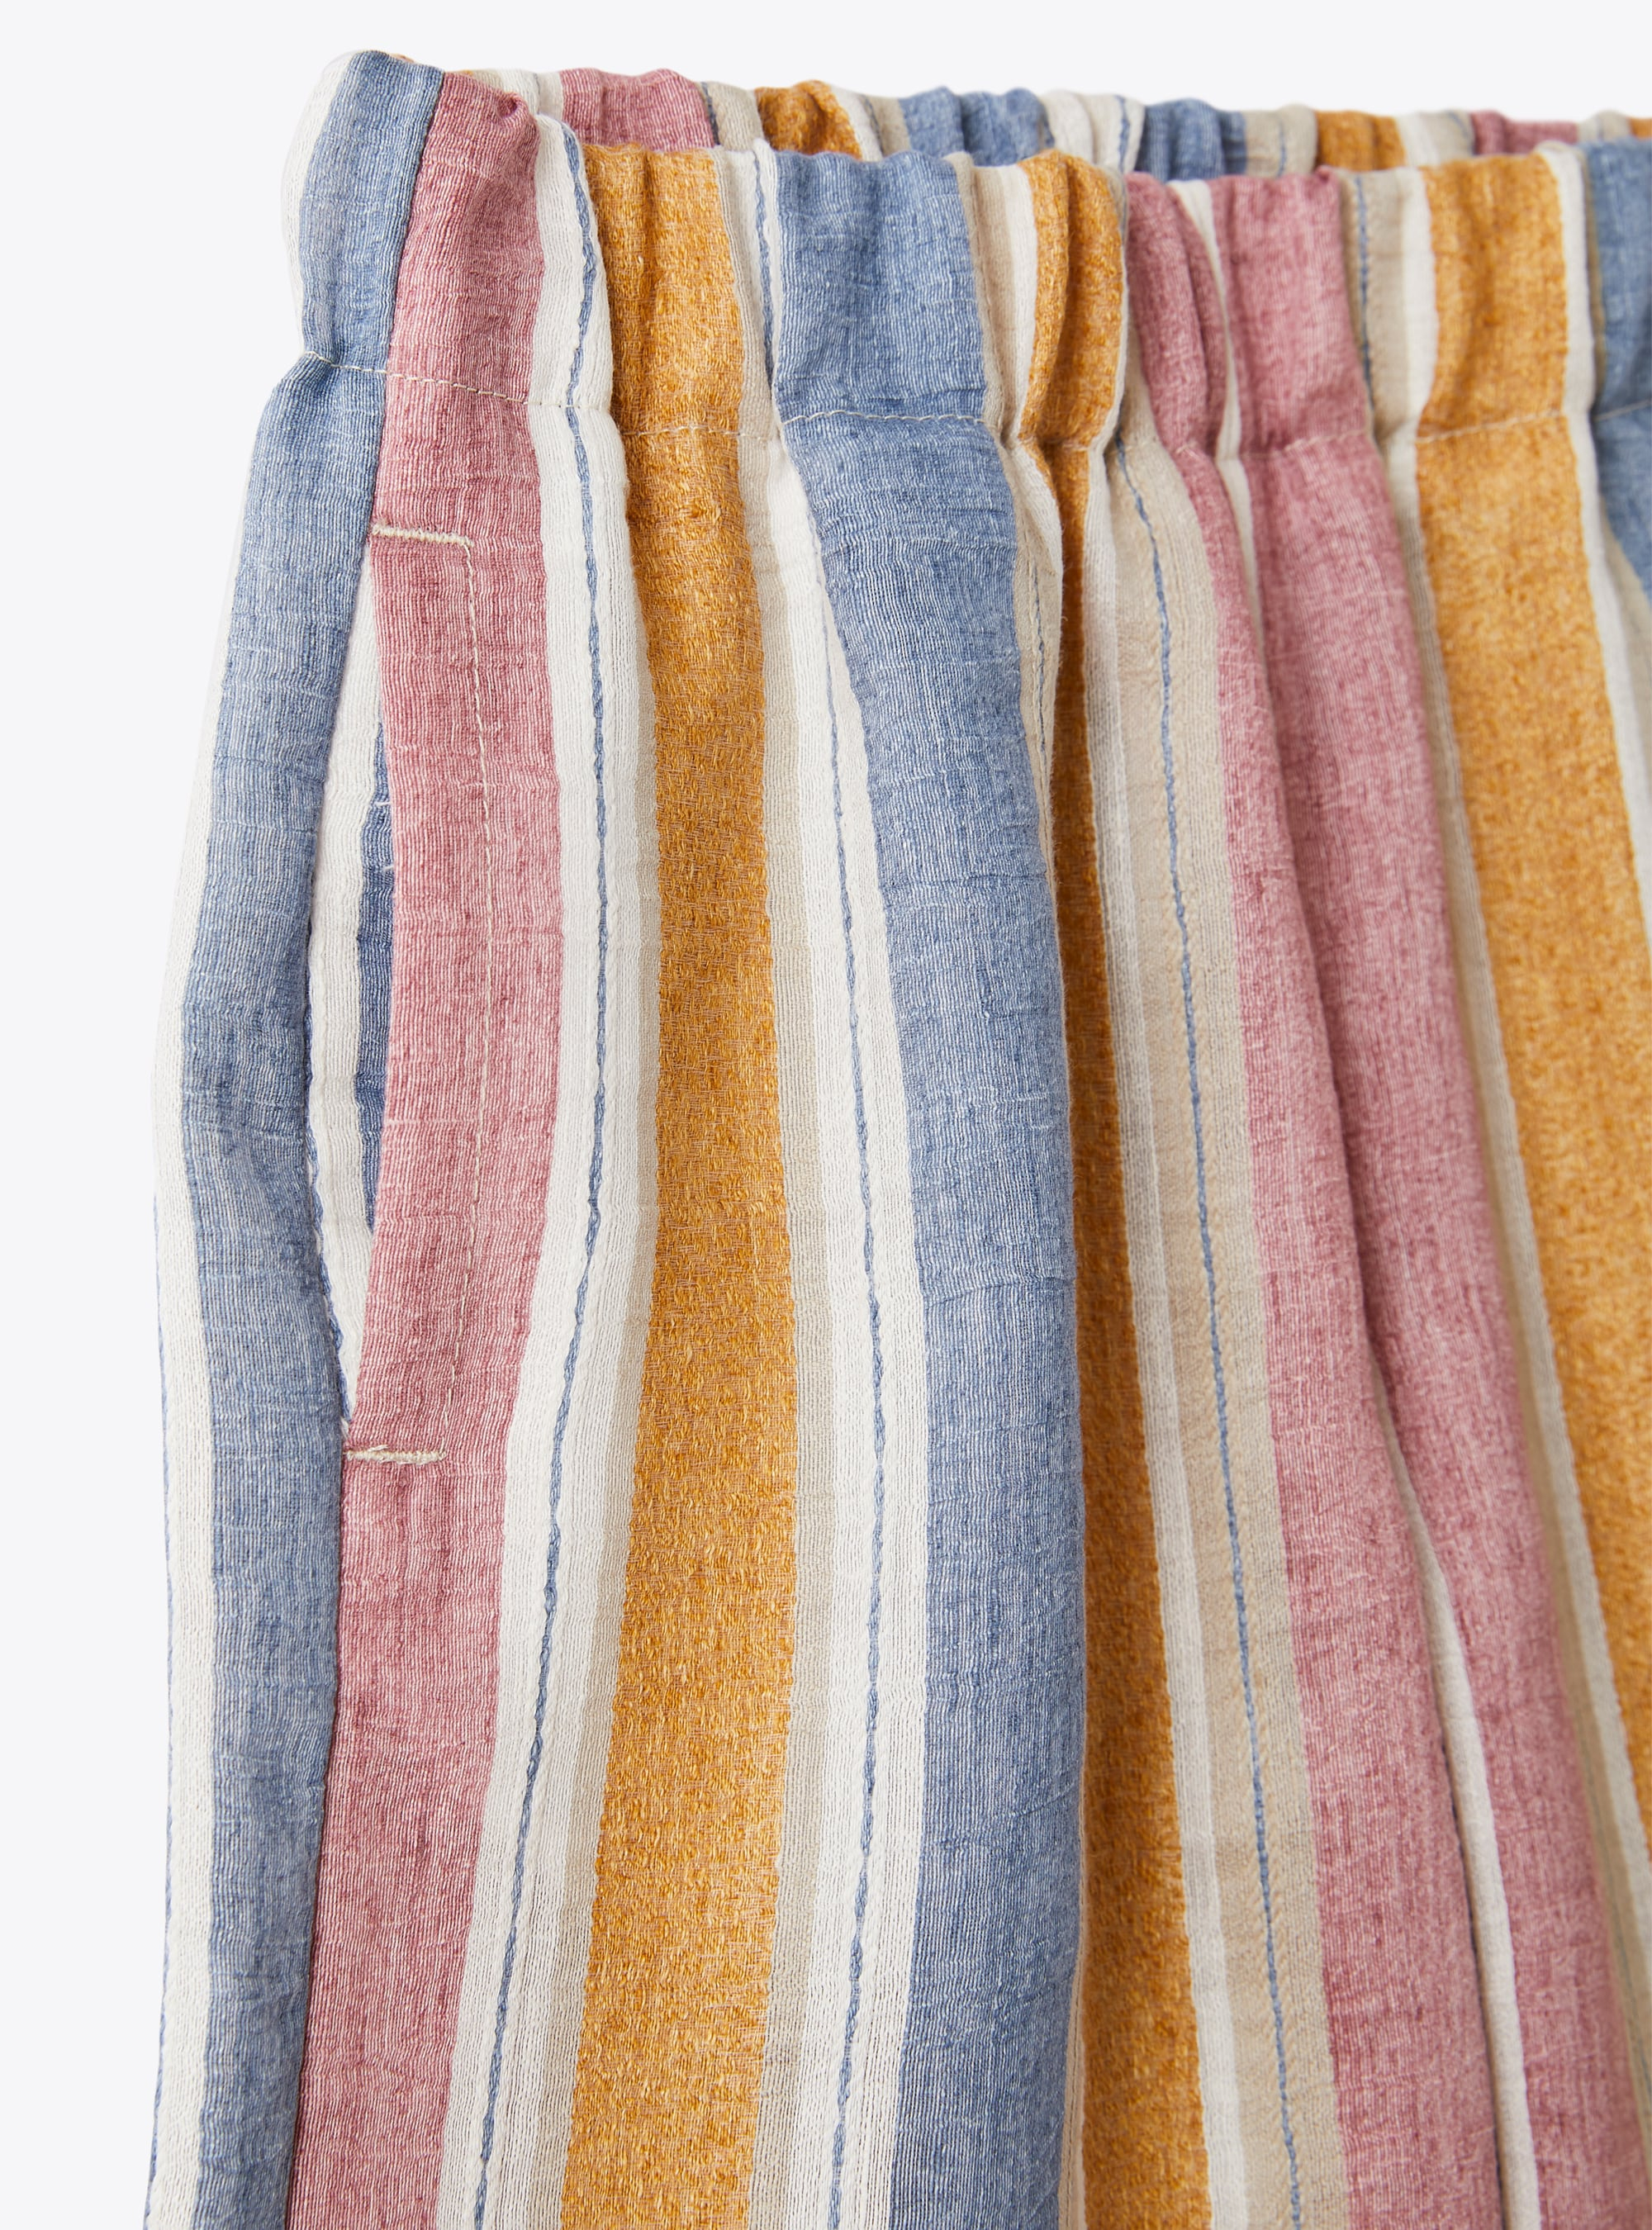 Capri pants in a striped linen blend - Yellow | Il Gufo